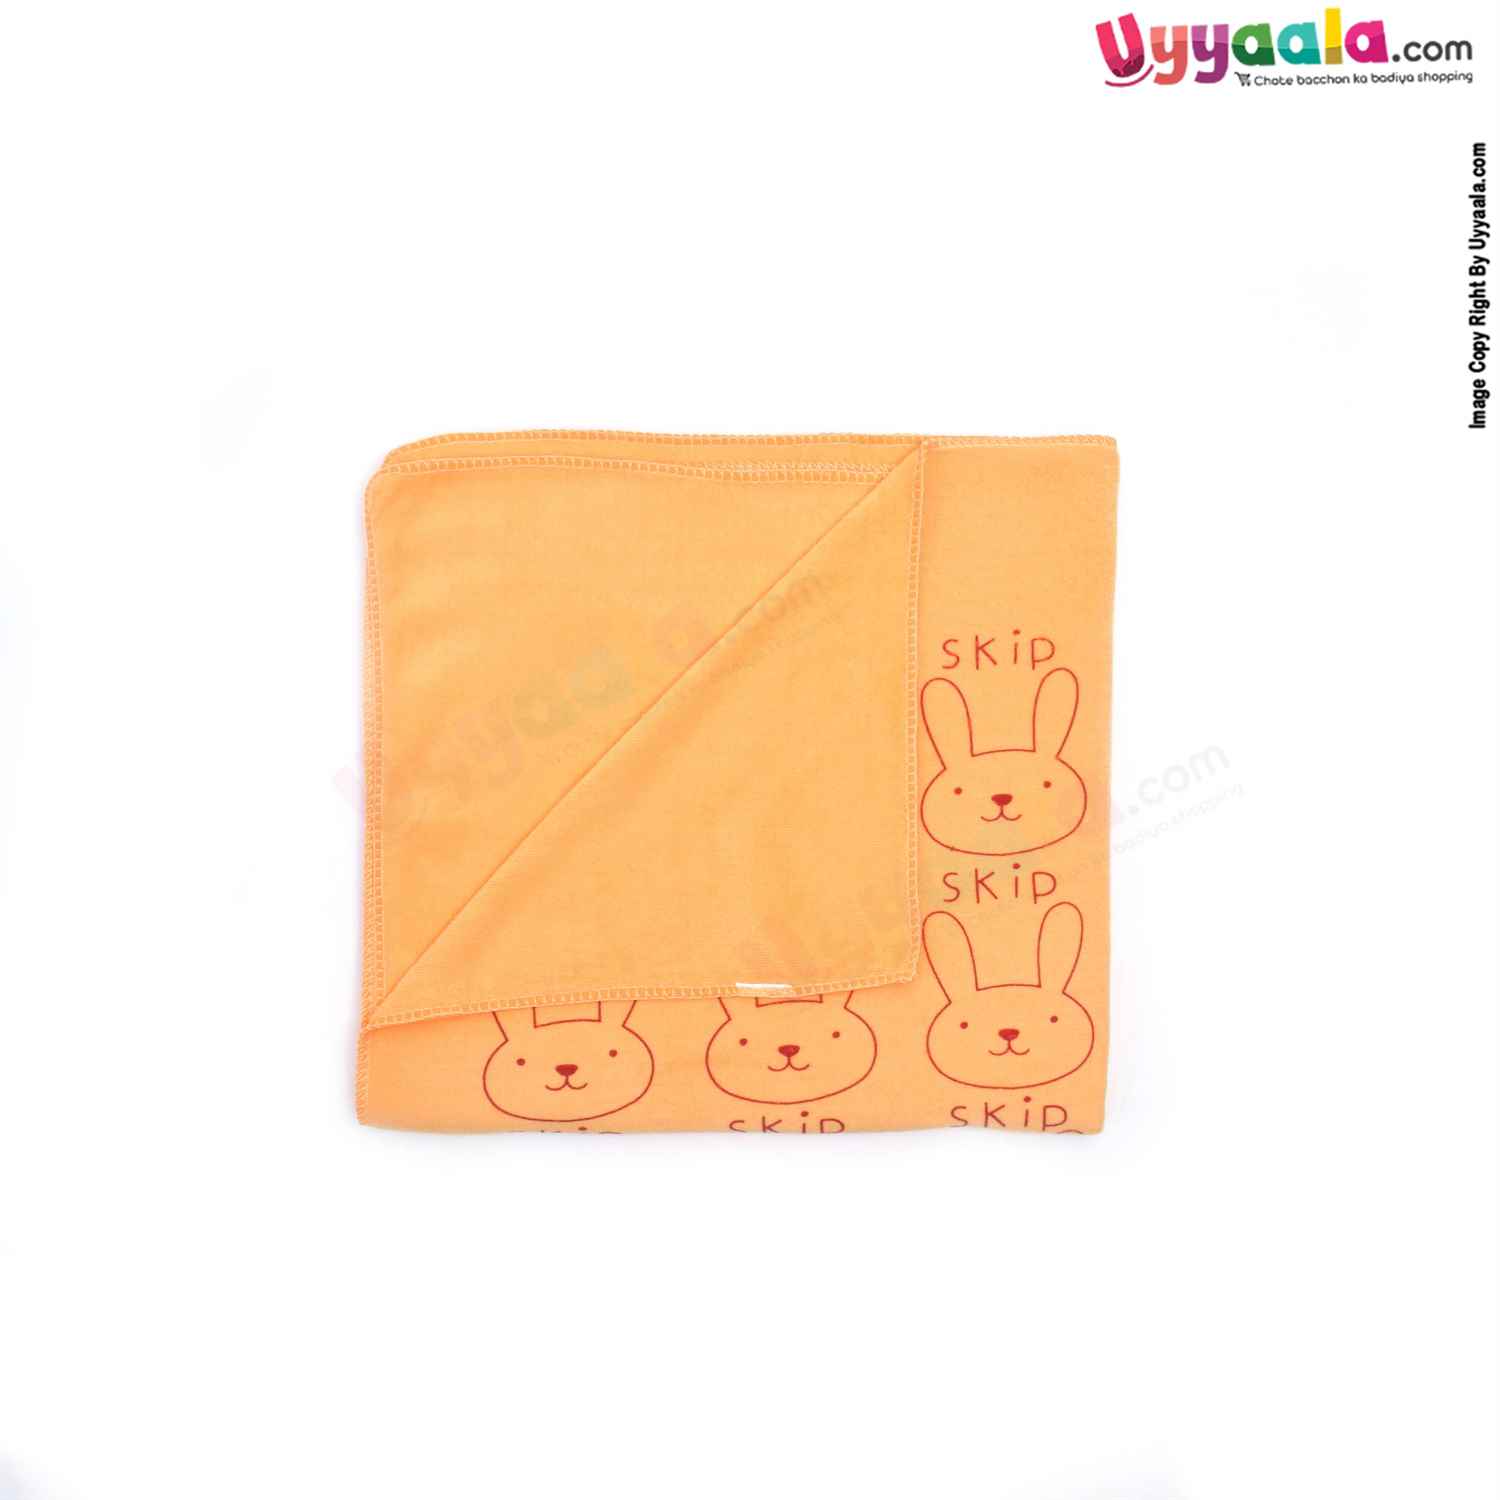 Soft Terry Bath Towel Premium with Rabbit Print for Babies 0-36m Age, Size (143*75cm)- Orange